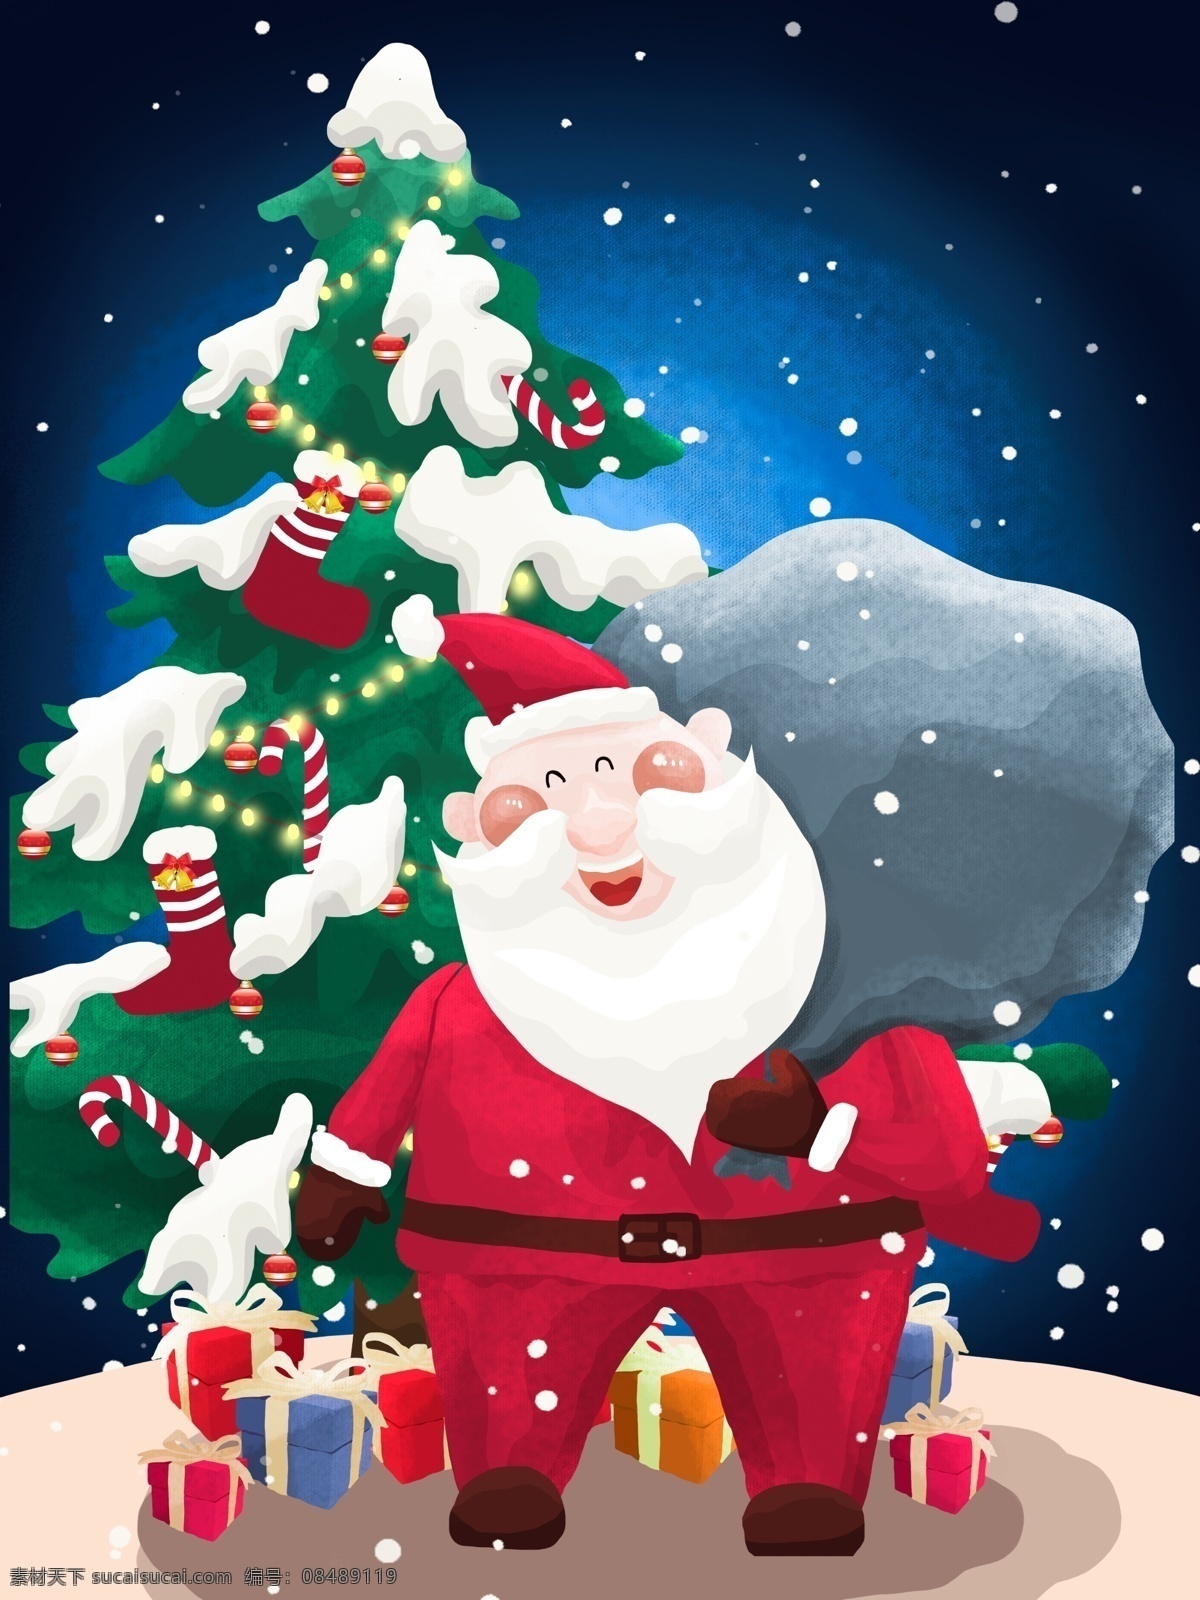 圣诞节 圣诞树 圣诞老人 派 礼物 礼物盒 贺卡 派礼物 下雪天 白胡子 包裹 红衣服 袜子 小串灯